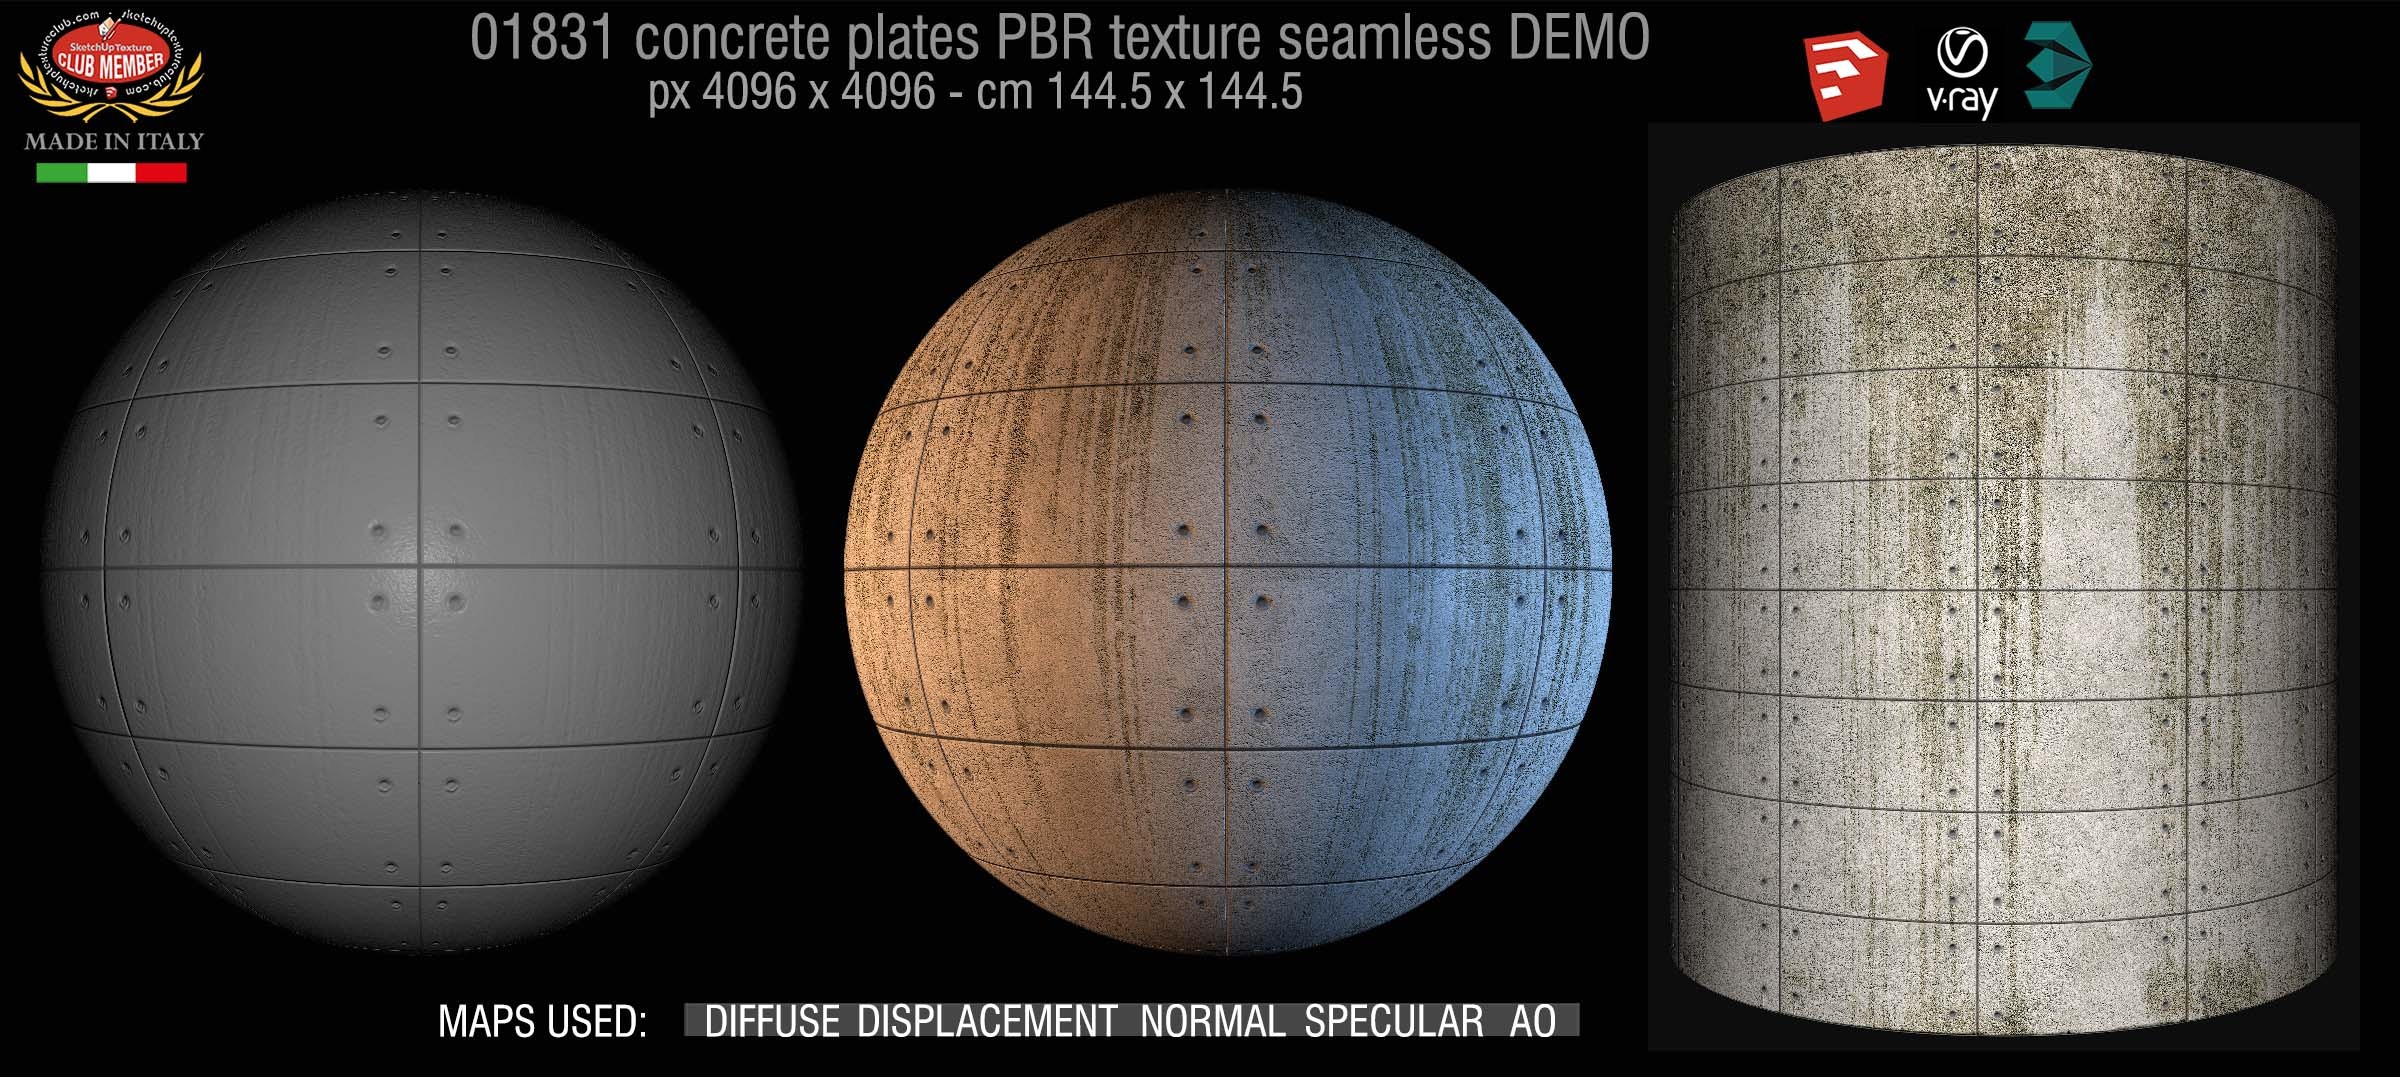 01831 Tadao Ando concrete plates PBR texture seamless DEMO